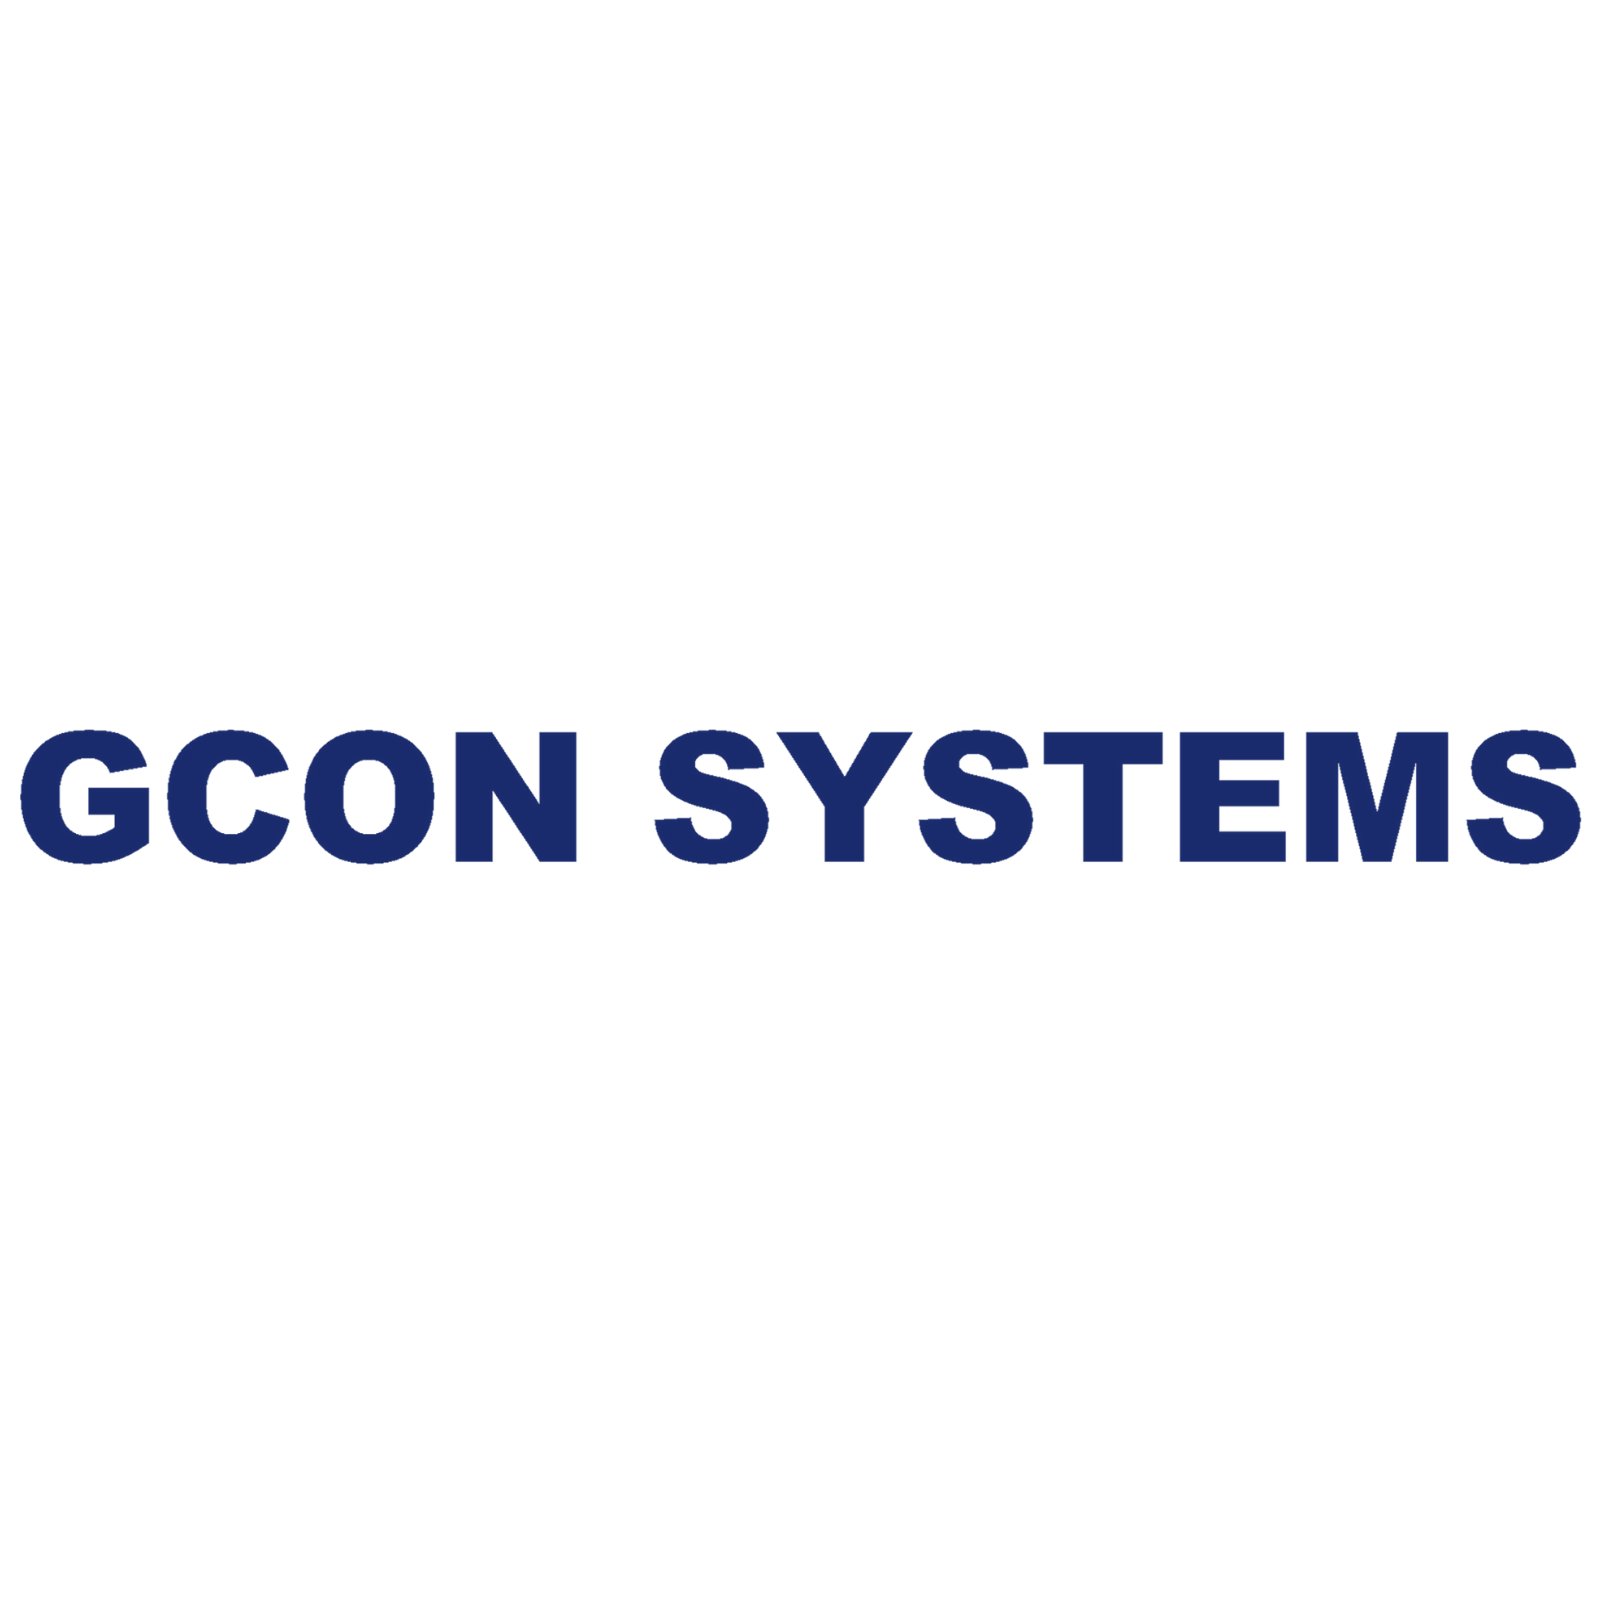 GCON Systems